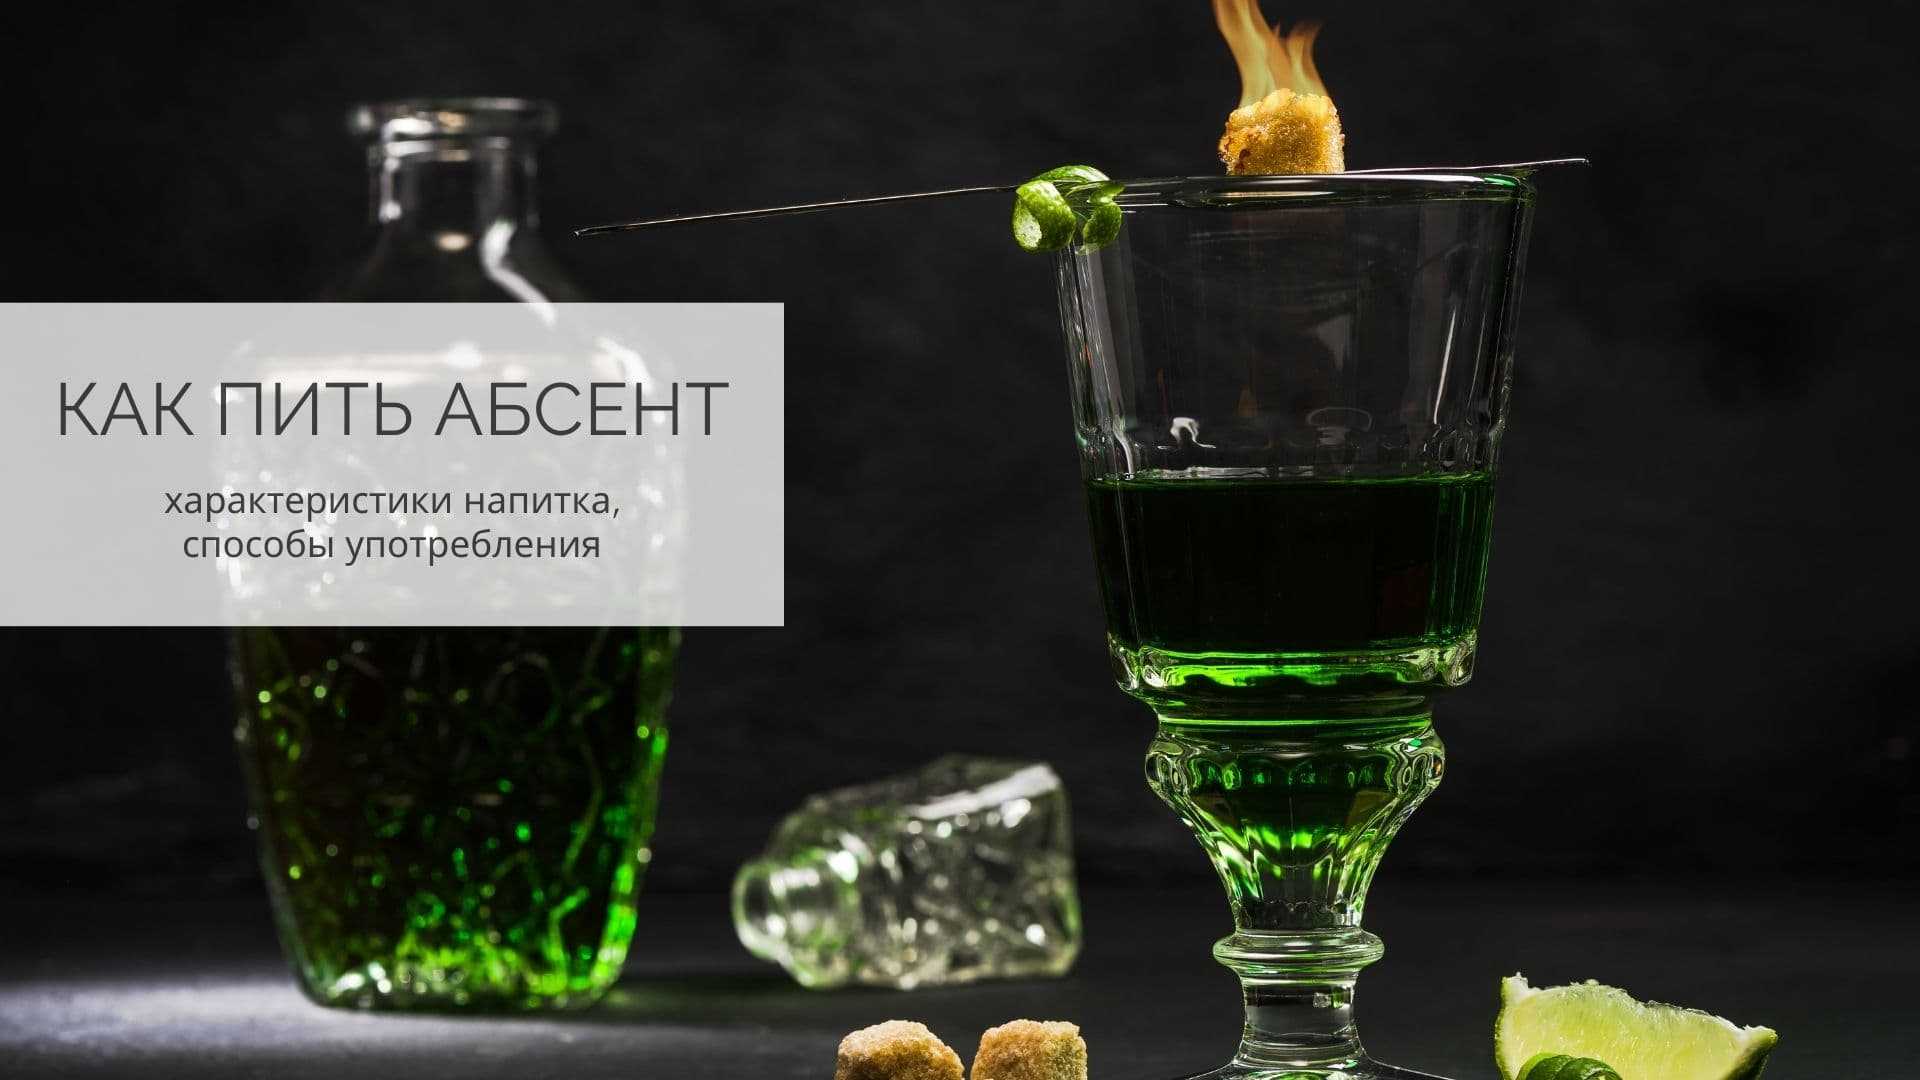 Абсент грин иллюзион (green illusion) – описание марки - ромовыйблог.ру | онлайн-журнал об алкогольных напитках